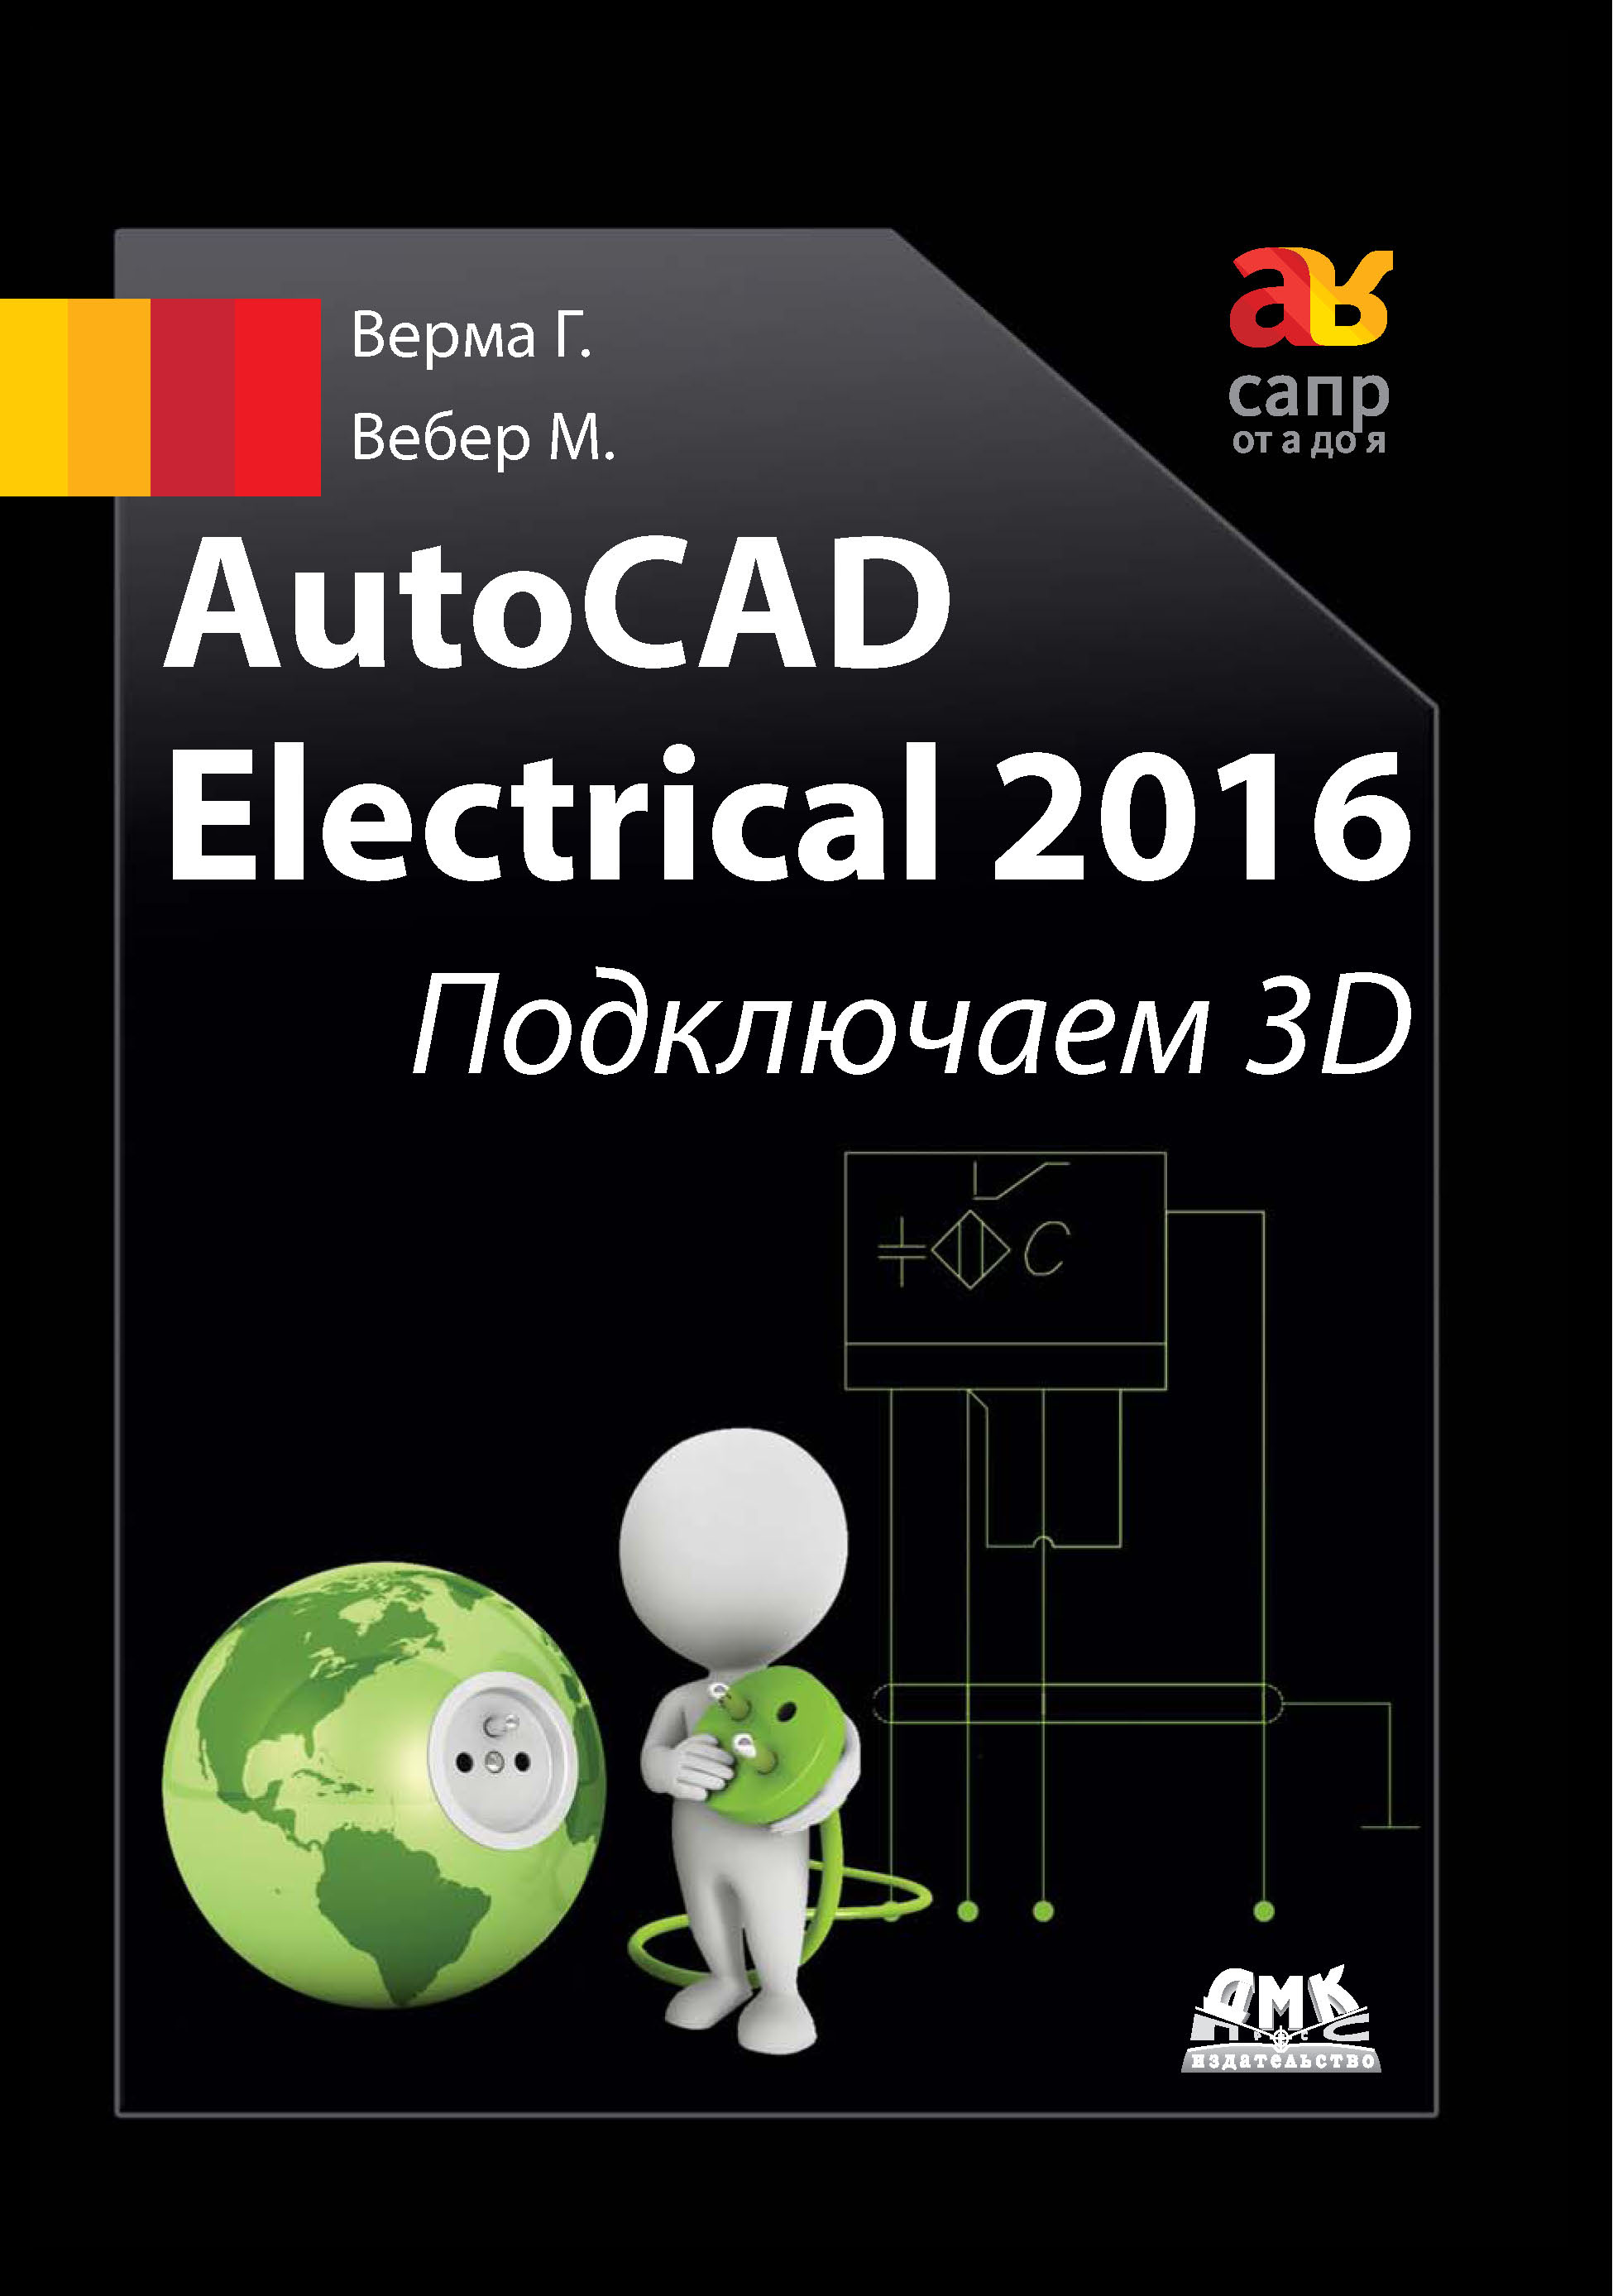 AutoCAD Electrical 2016.Подключаем 3D